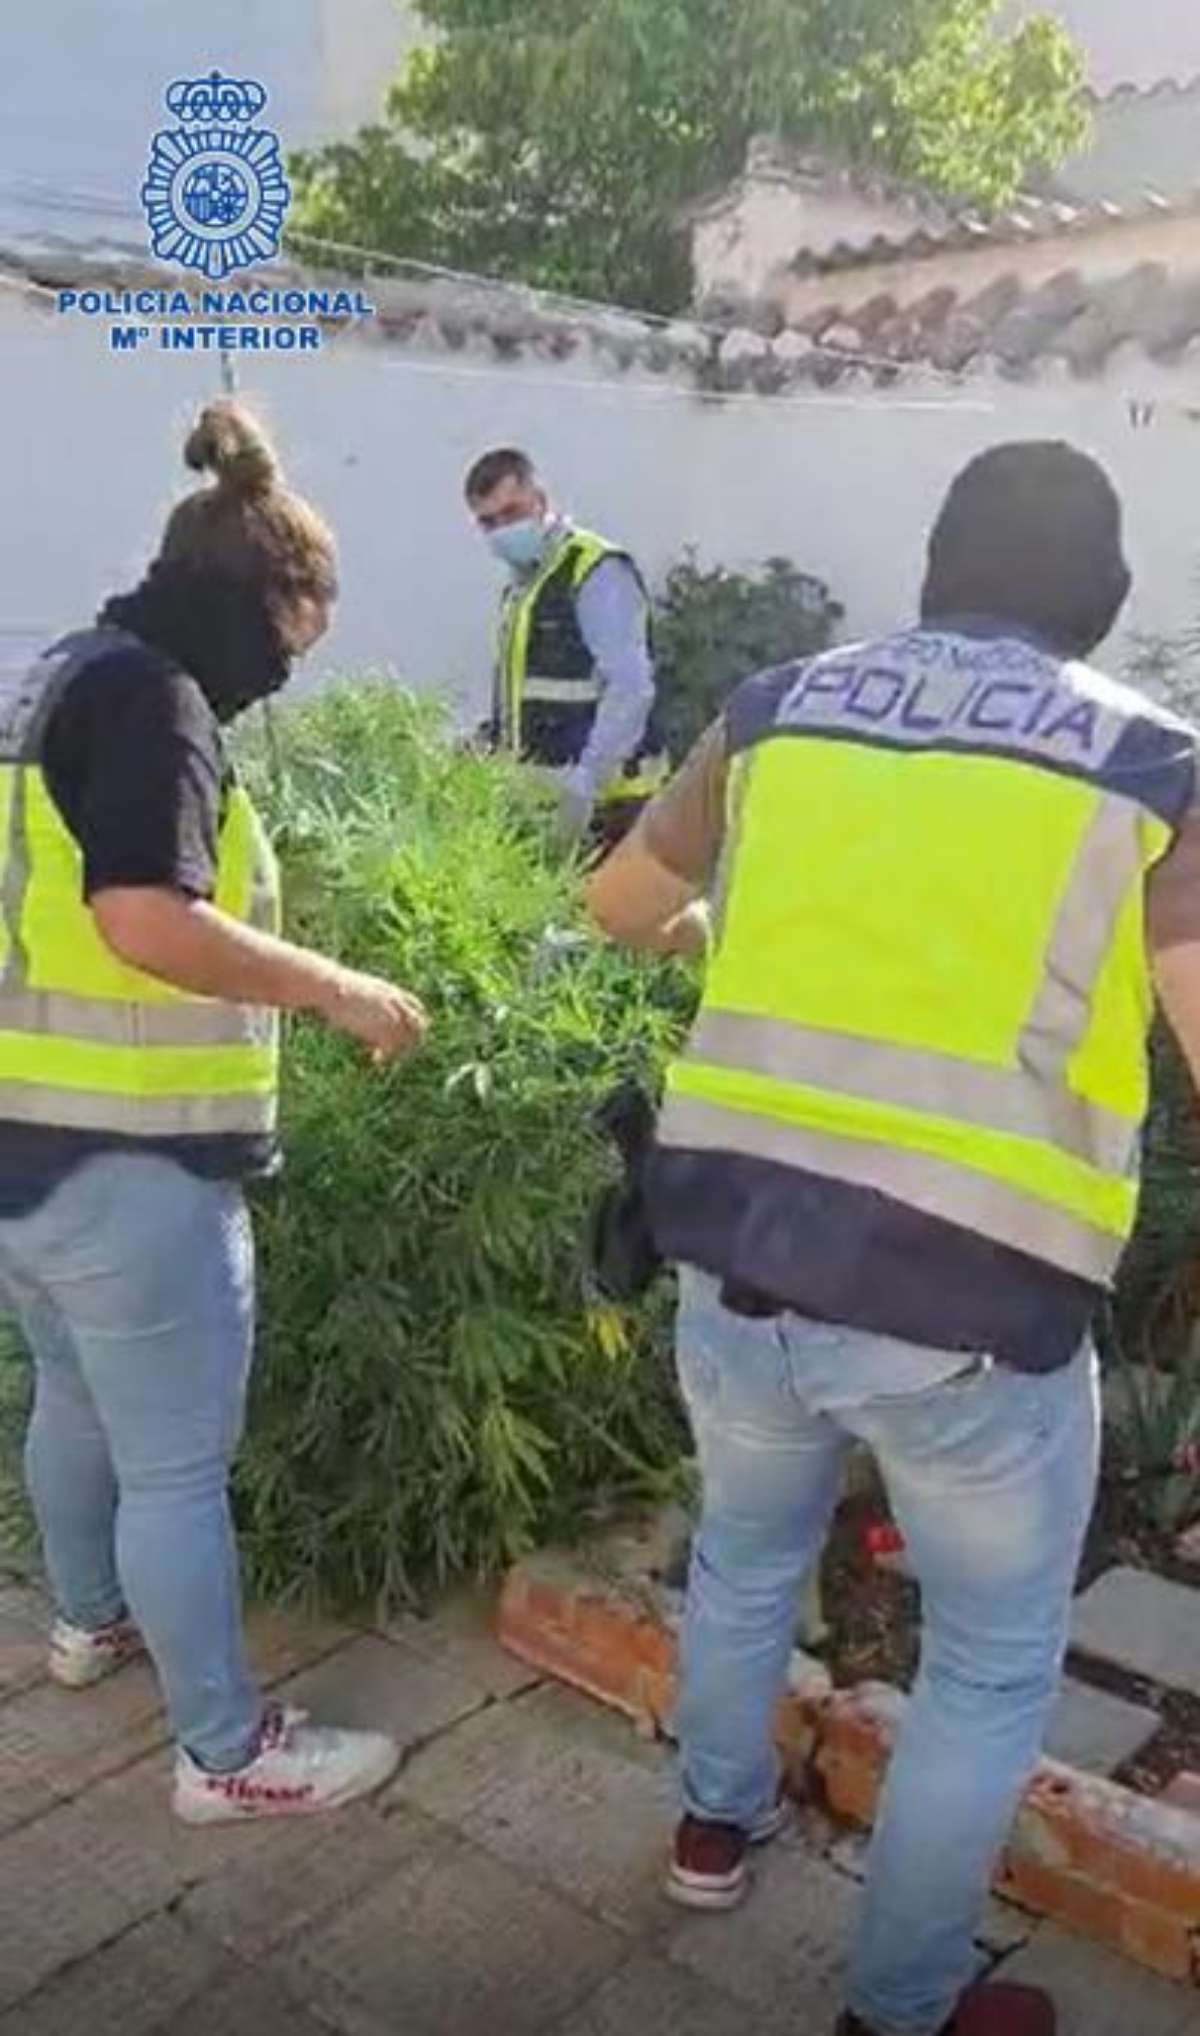 La Policía Nacional desmantela un importante punto de venta de drogas en Valdepeñas